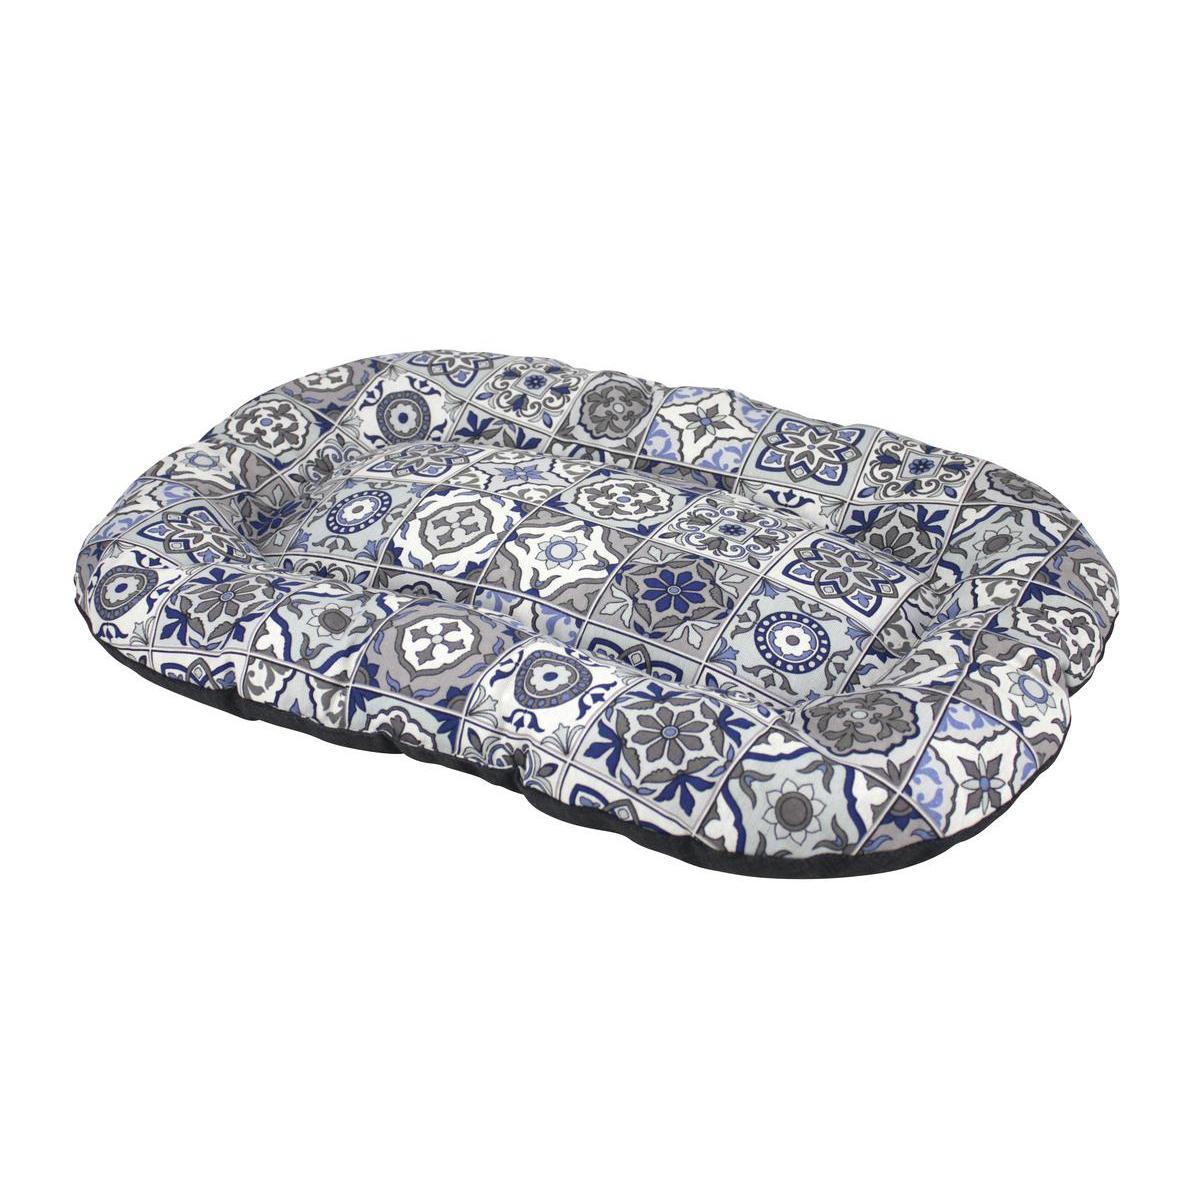 Matelas ovale réversible motifs carreaux de ciment - 70 x 40 cm - Bleu, gris